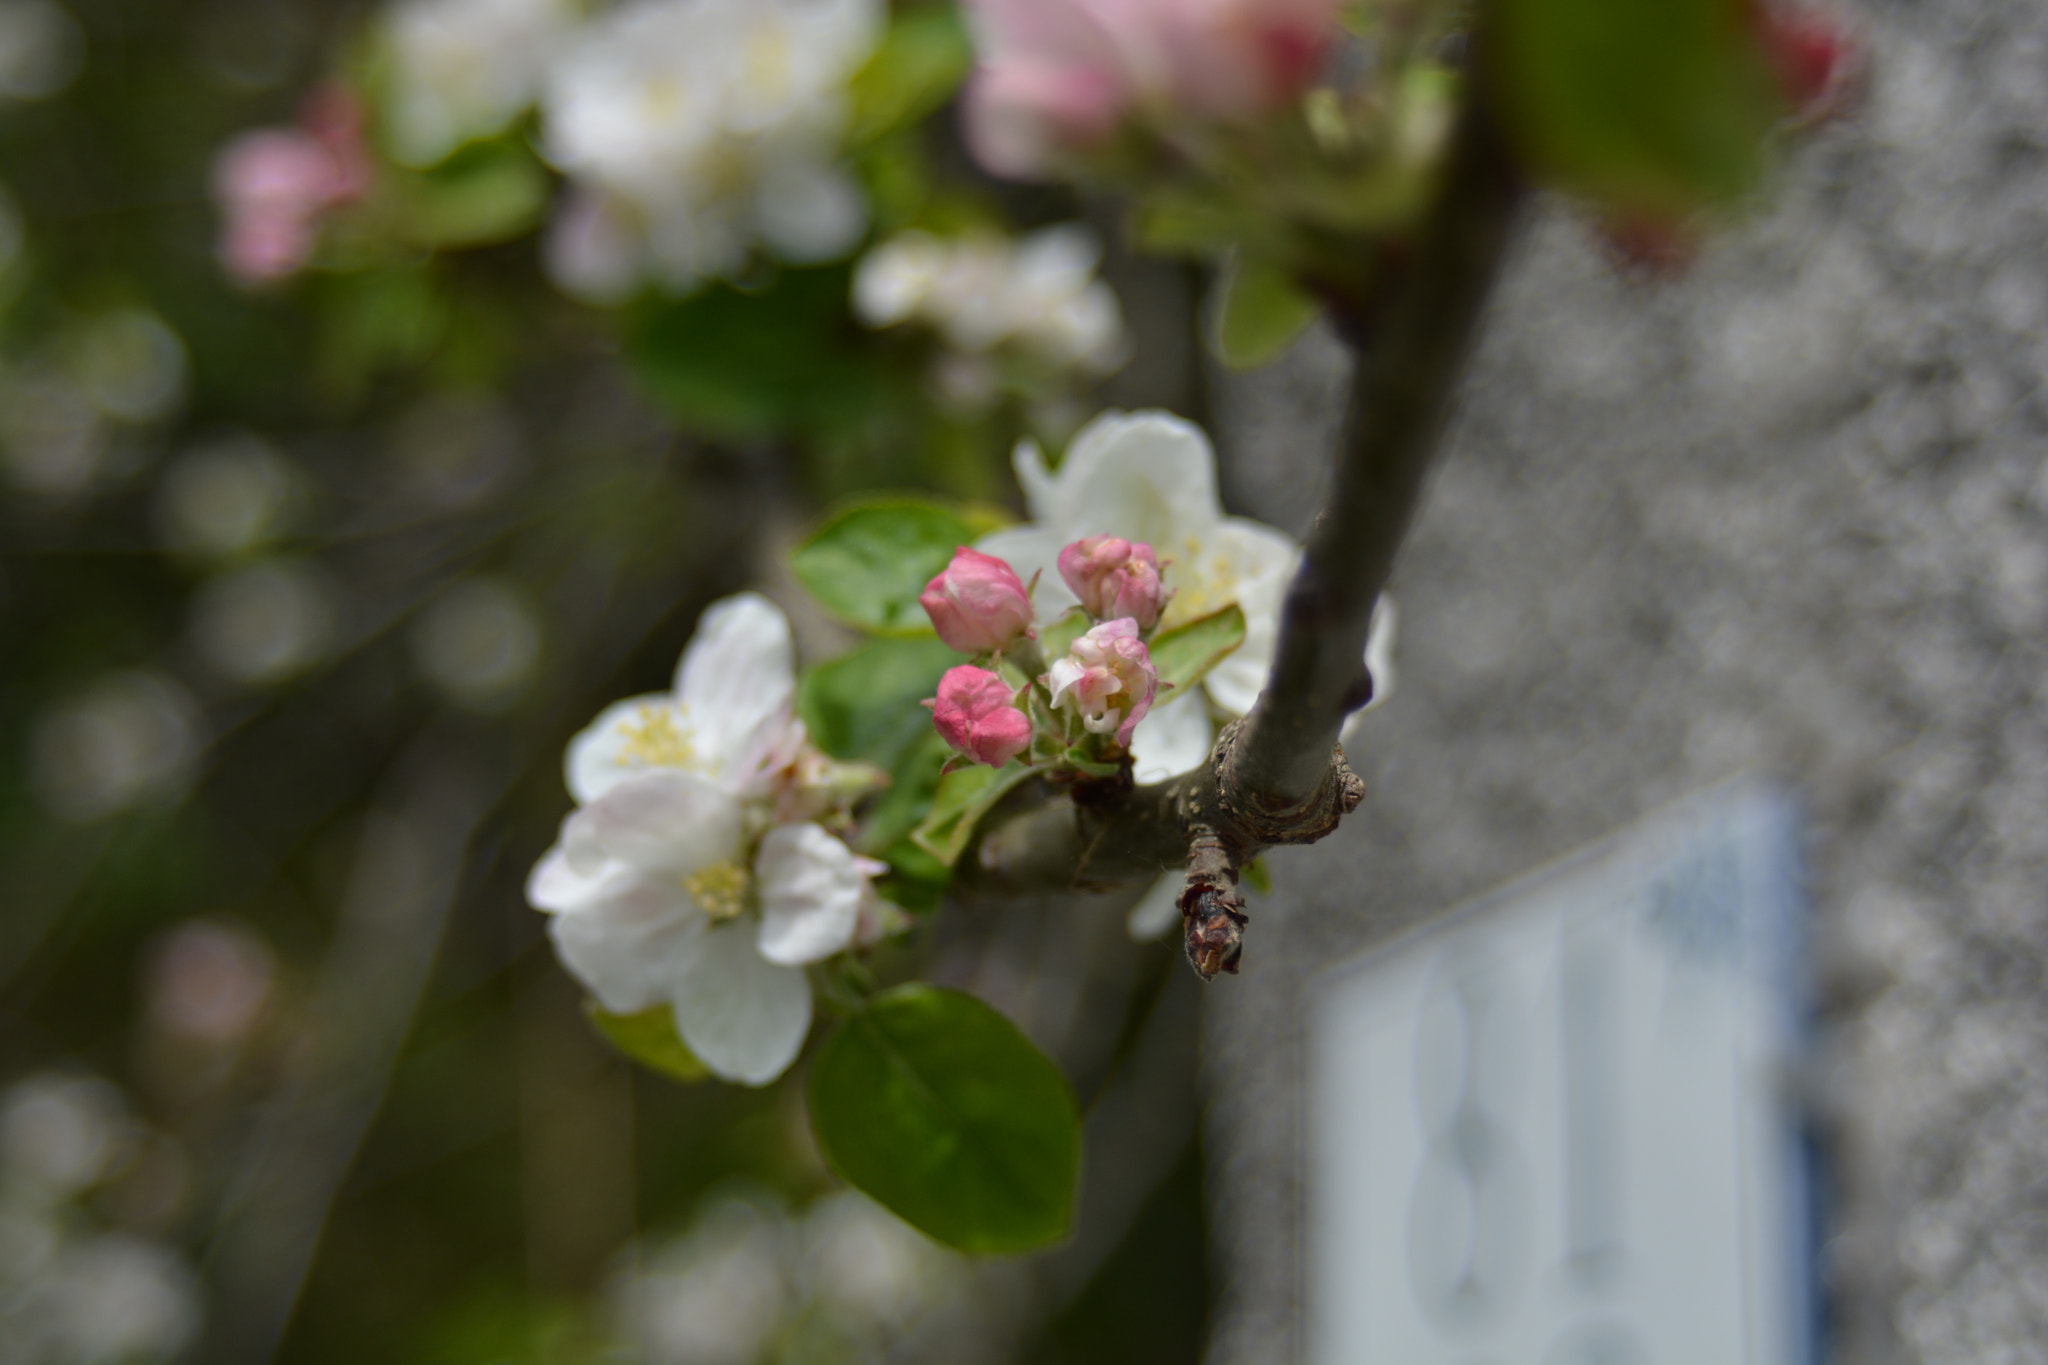 AF Zoom-Nikkor 35-70mm f/3.3-4.5 N sample photo. Apple flowers photography